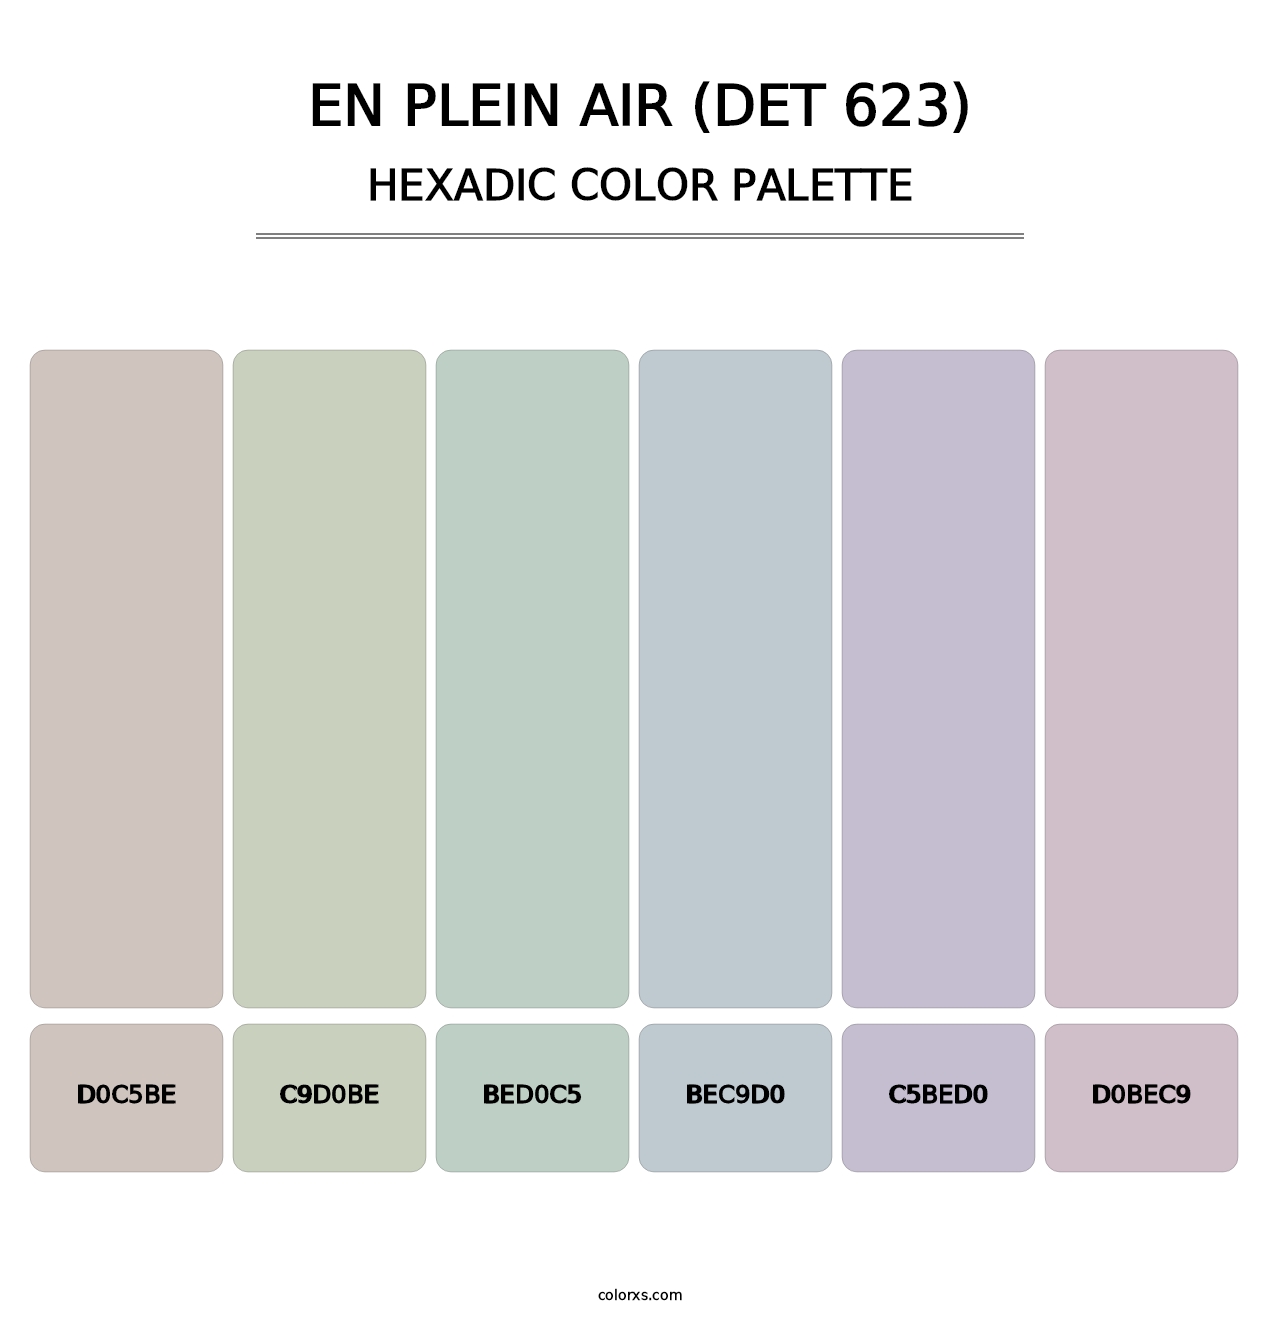 En Plein Air (DET 623) - Hexadic Color Palette